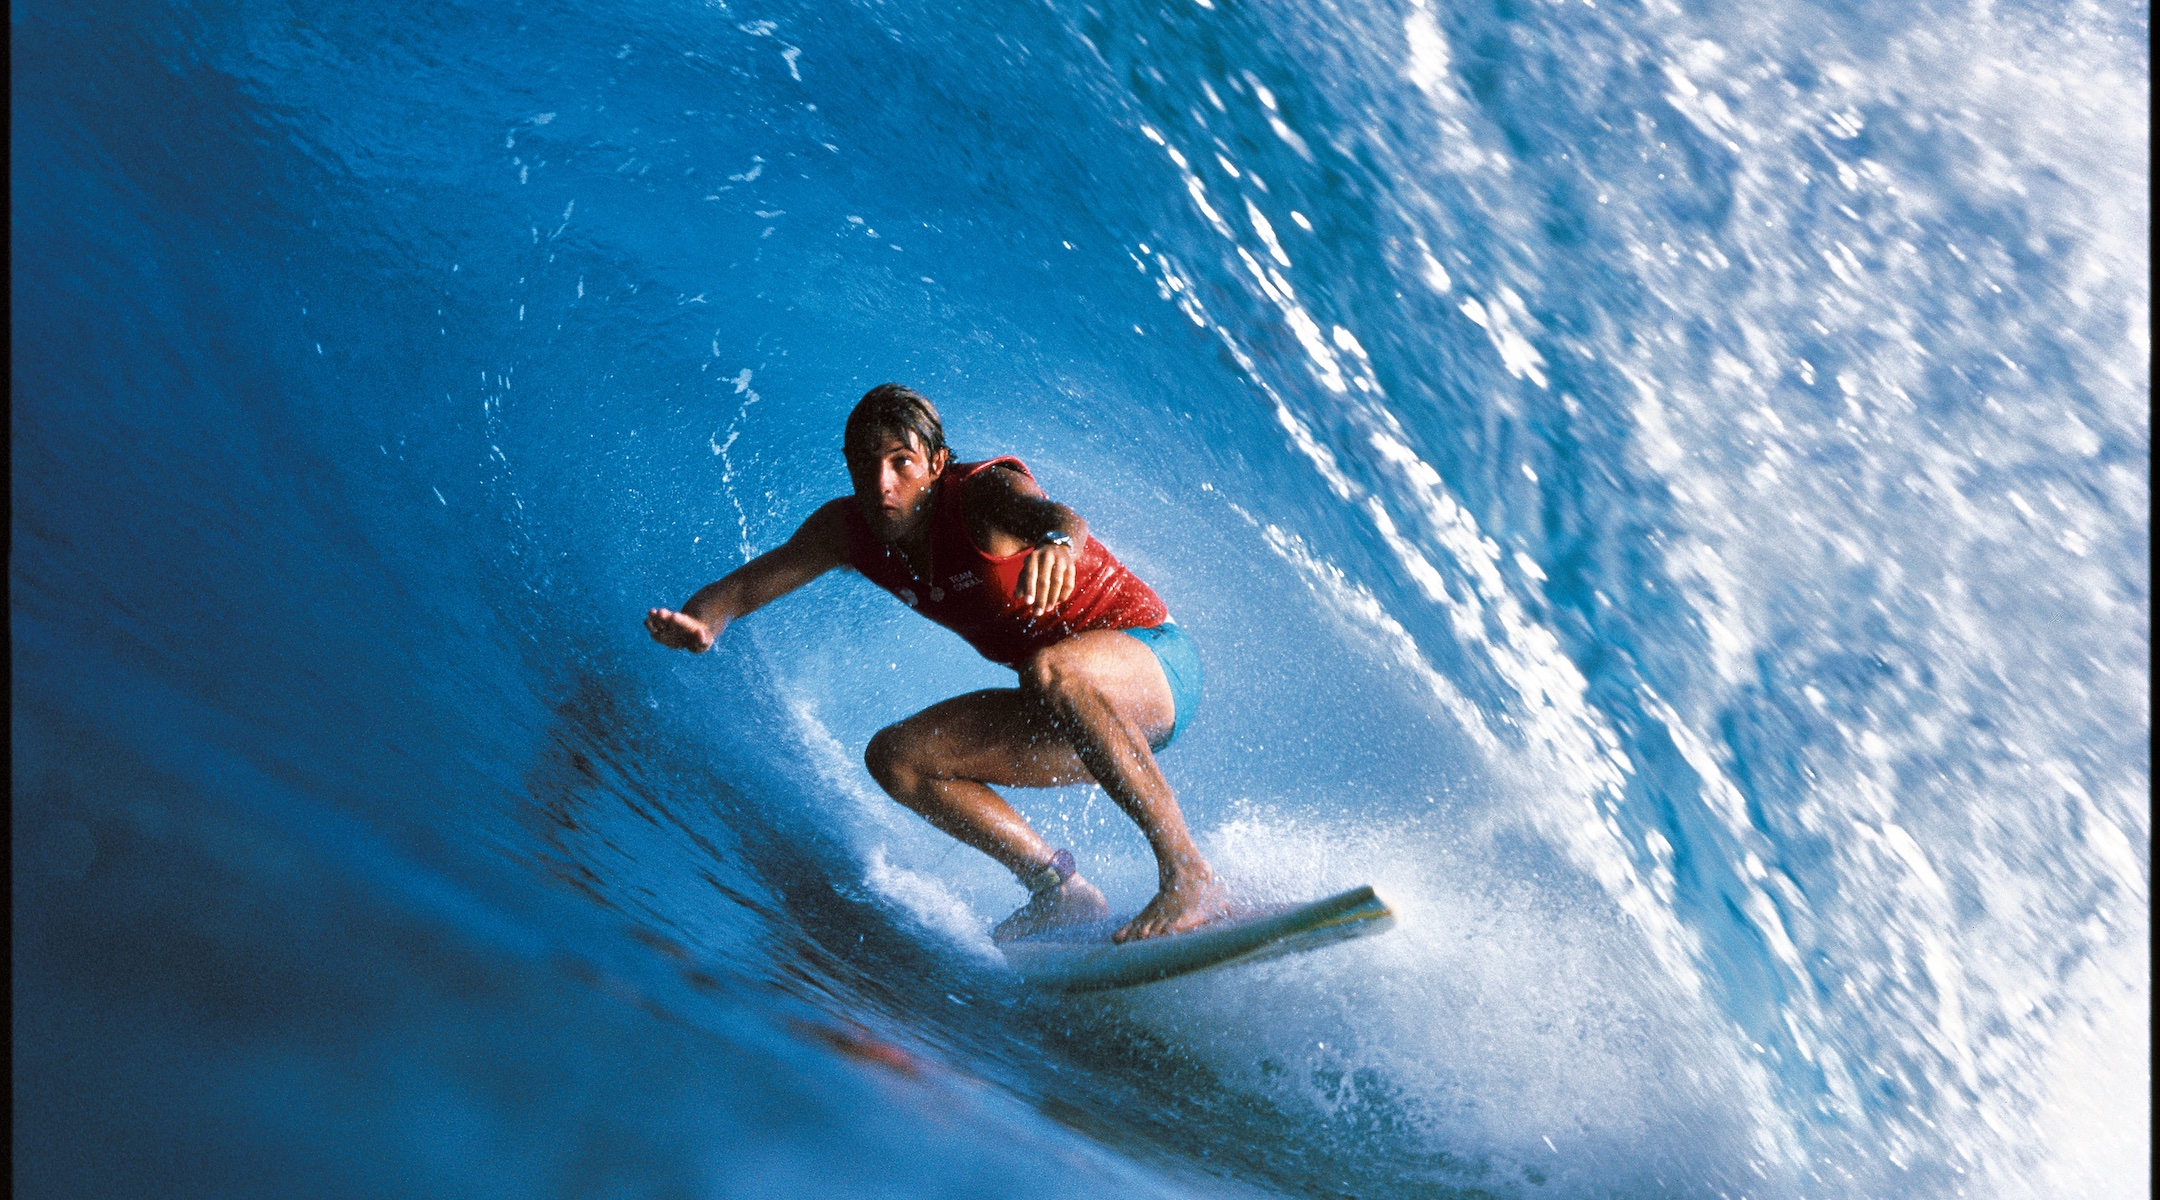 Shaun Tomson surfing